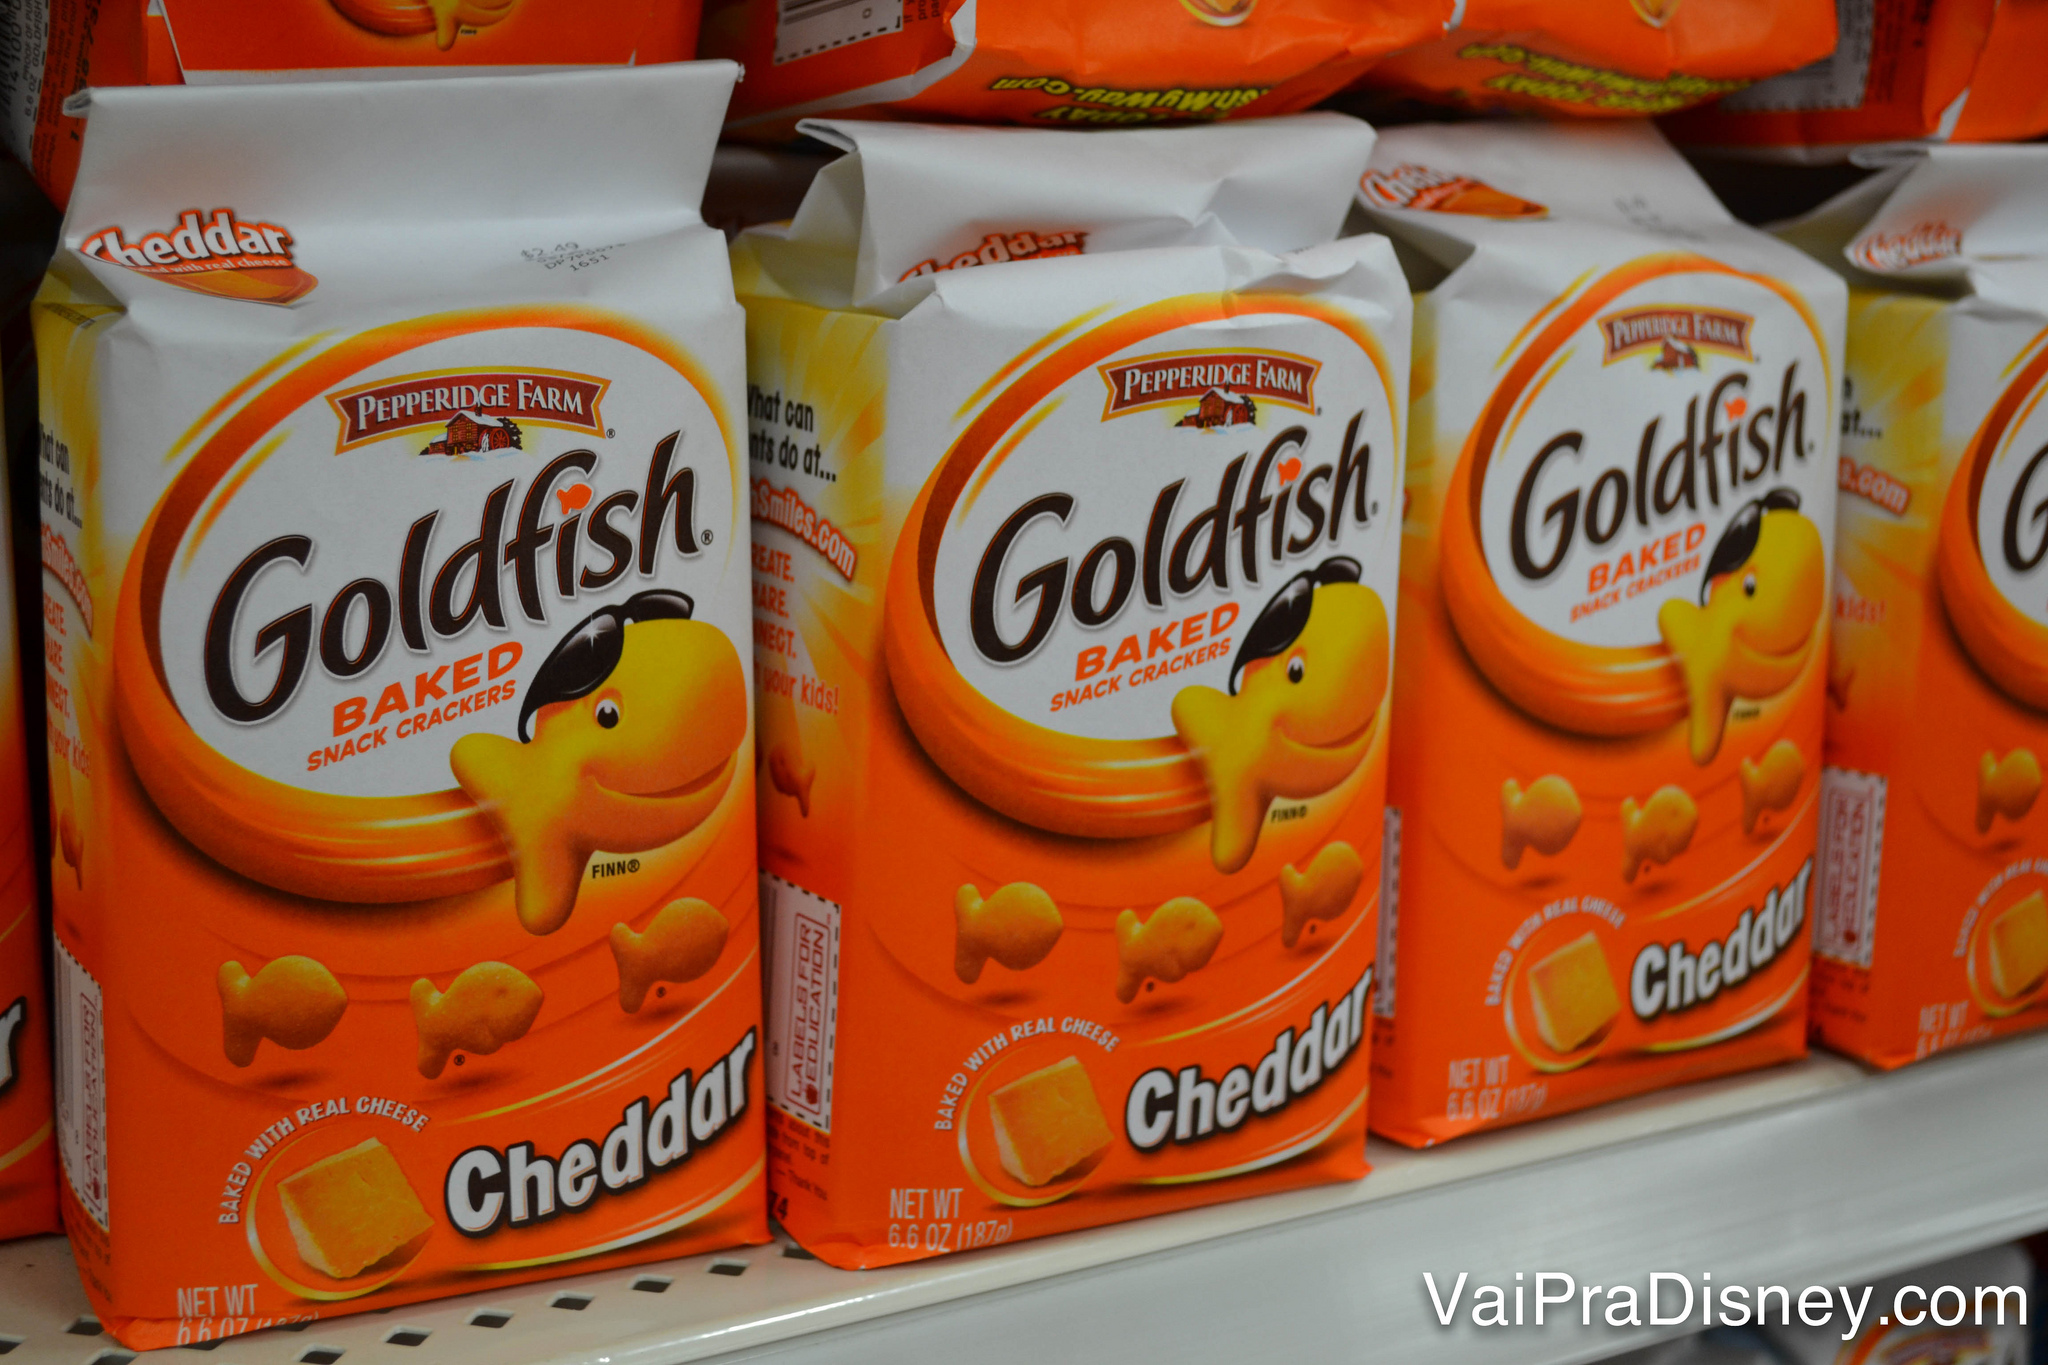 Eu nunca gostei desse negócio, mas esse salgadinho Goldfish faz maior sucesso nos EUA e eu sempre vejo nos parques. 